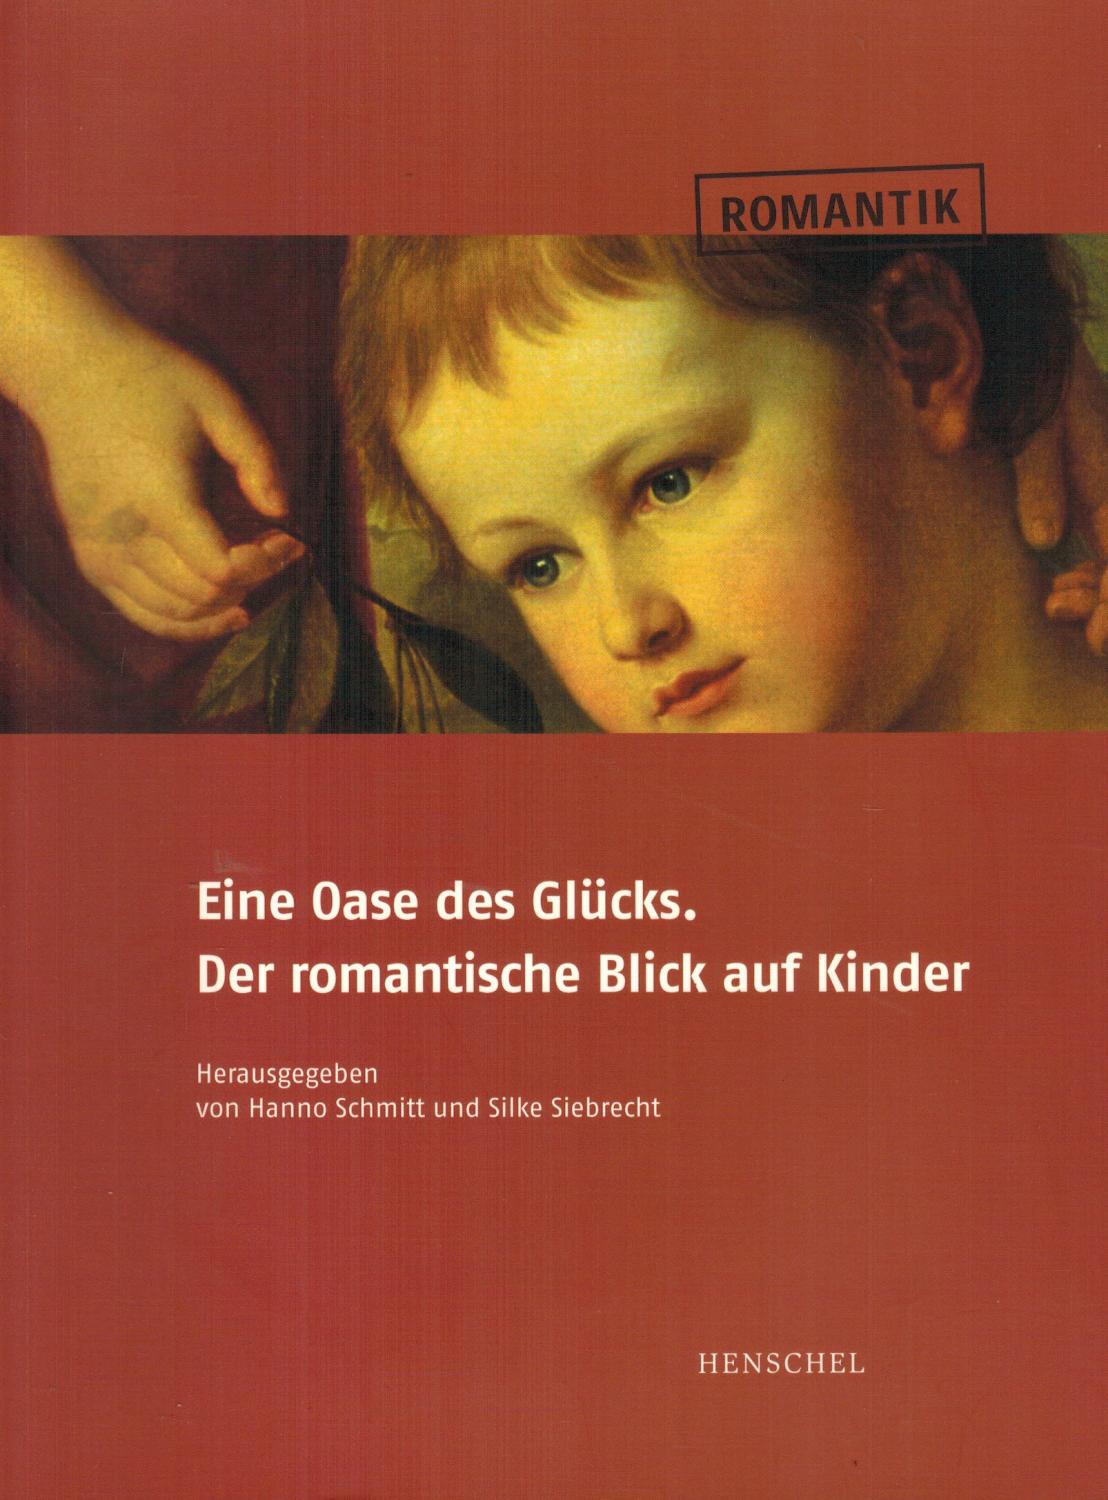 Eine Oase des Glücks. Der romantische Blick auf Kinder. Begleitbuch zur Ausstellung im Rochow-Museum Reckahn - Schmitt, Hanno; Siebrecht, Silke